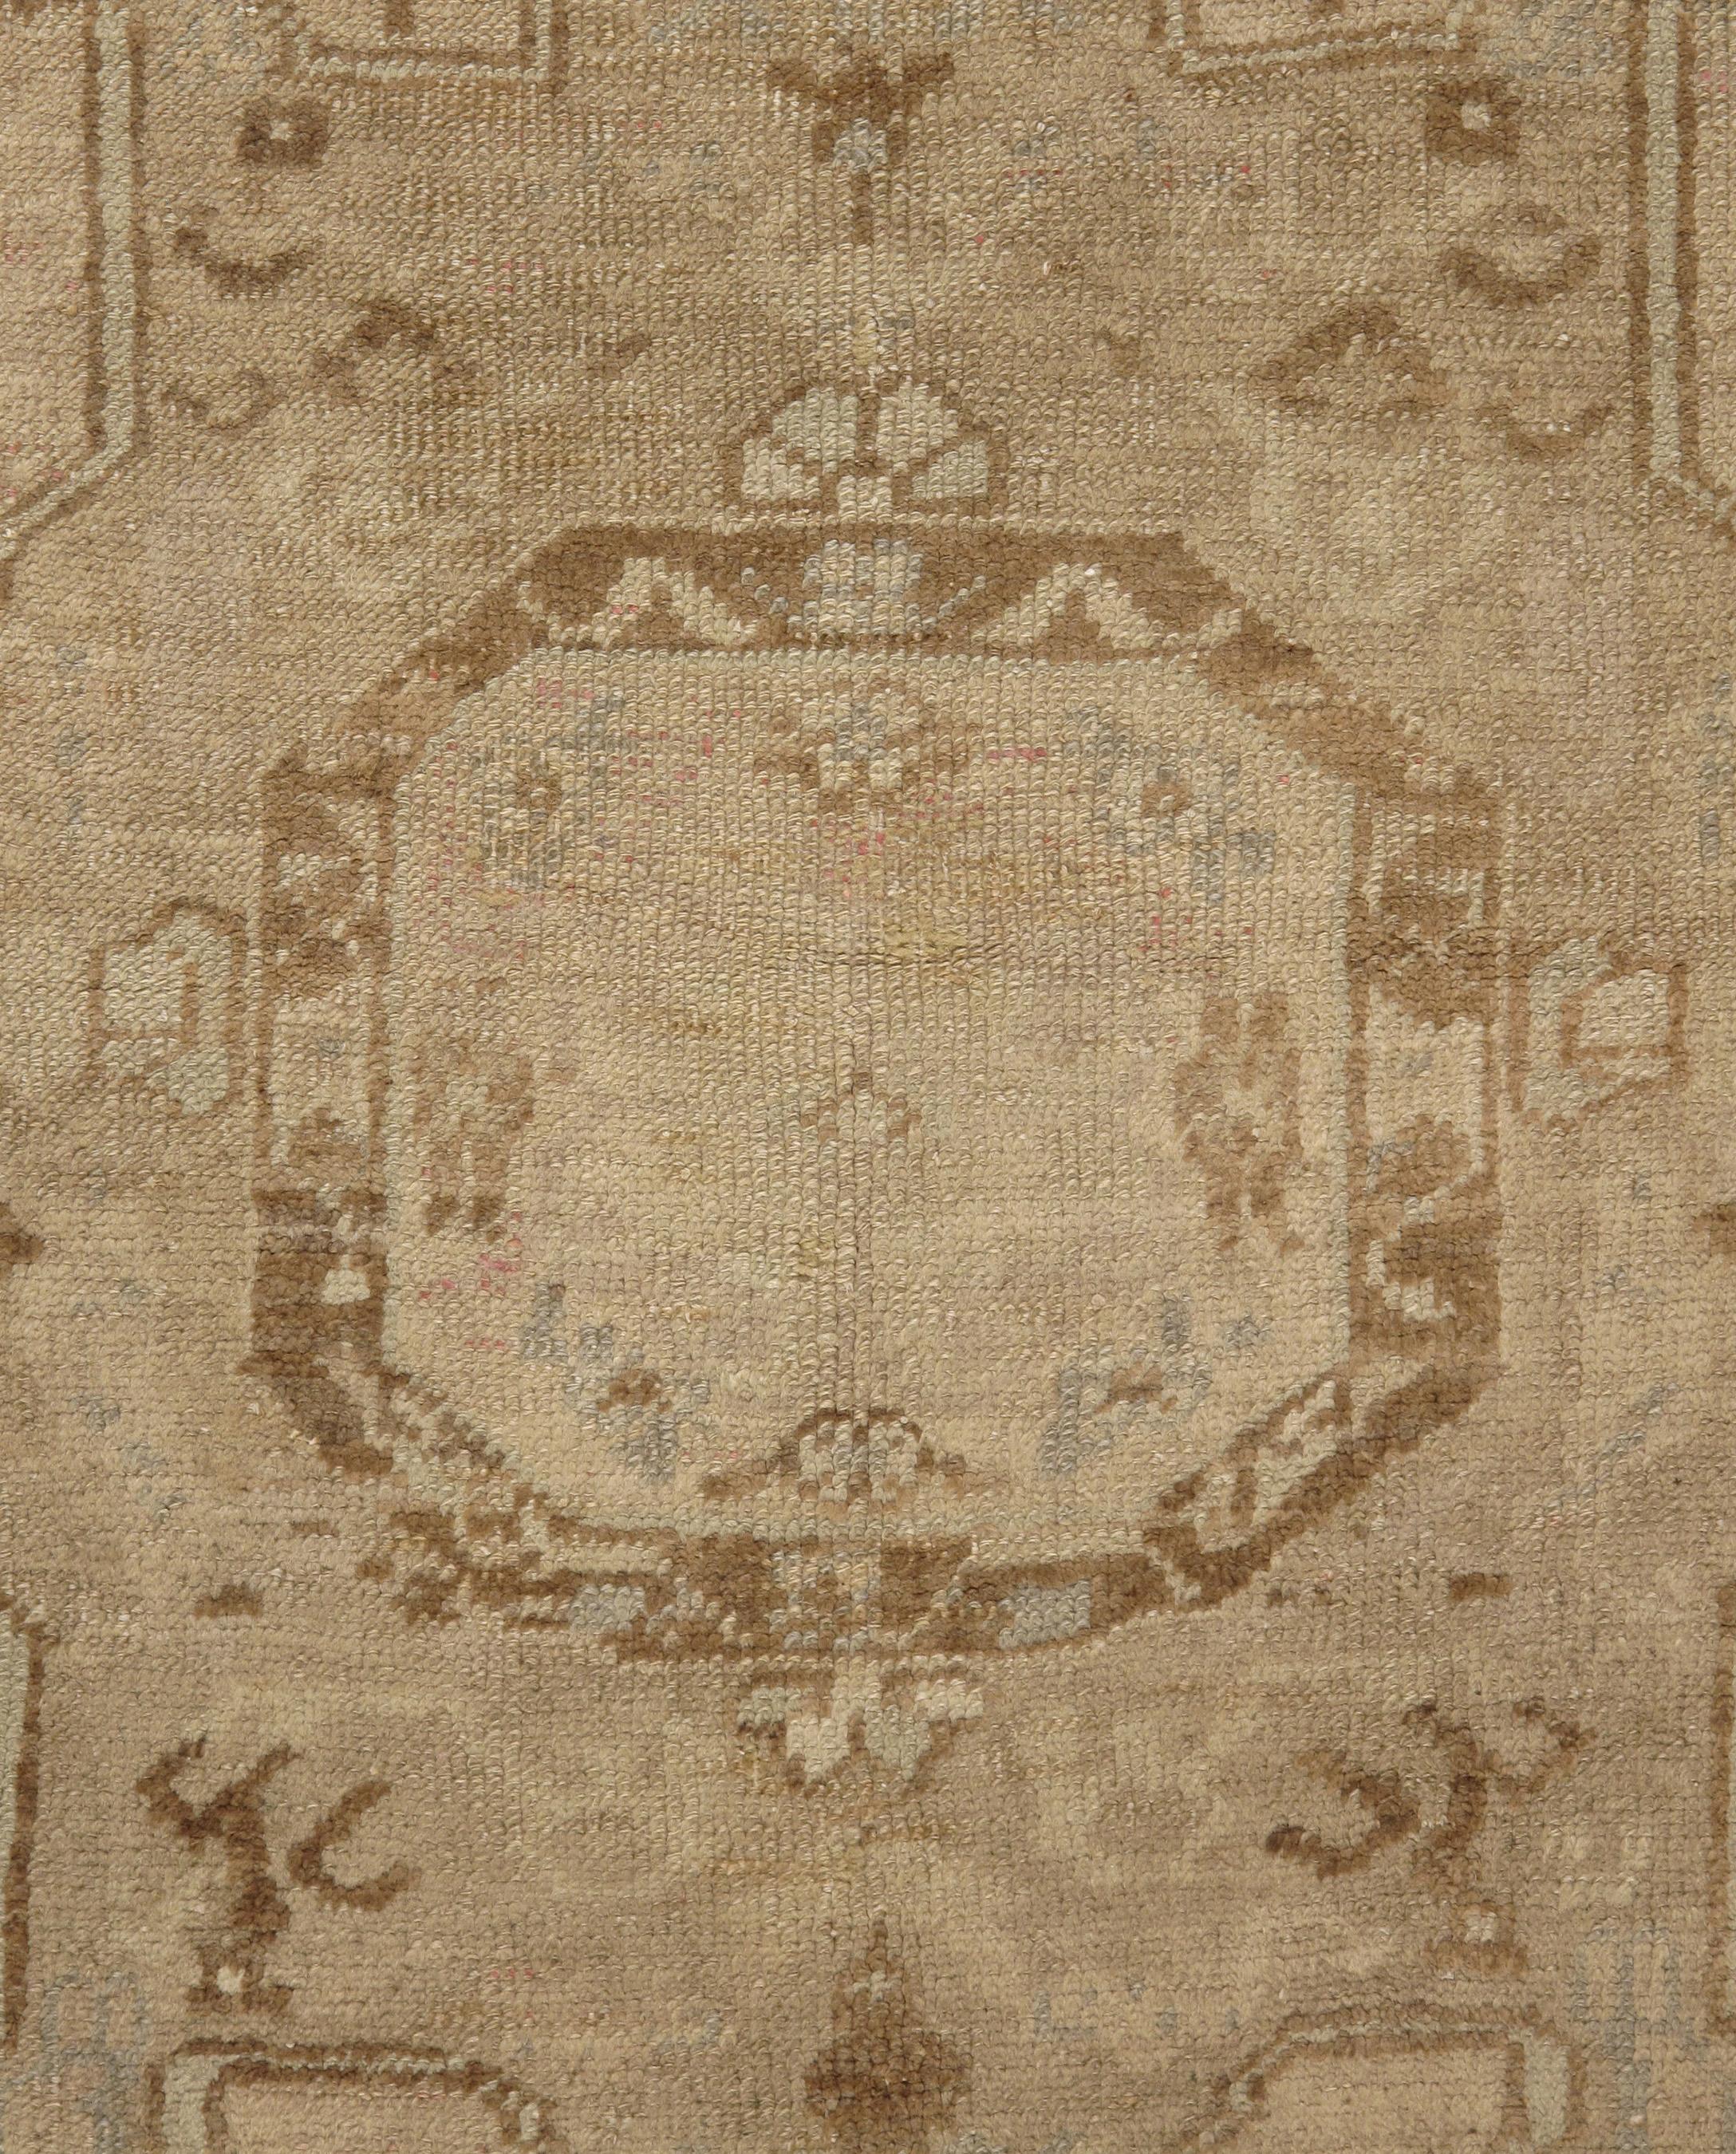 Türkischer Oushak-Teppich, um 1940. Größe: 3'10 x 7'8. Charakter, Tradition, Muster und Farbgebung vereinen sich in diesem wunderschönen, halb antiken, handgeknüpften türkischen Teppich, der in der kleinen west-zentralanatolischen Stadt Oushak